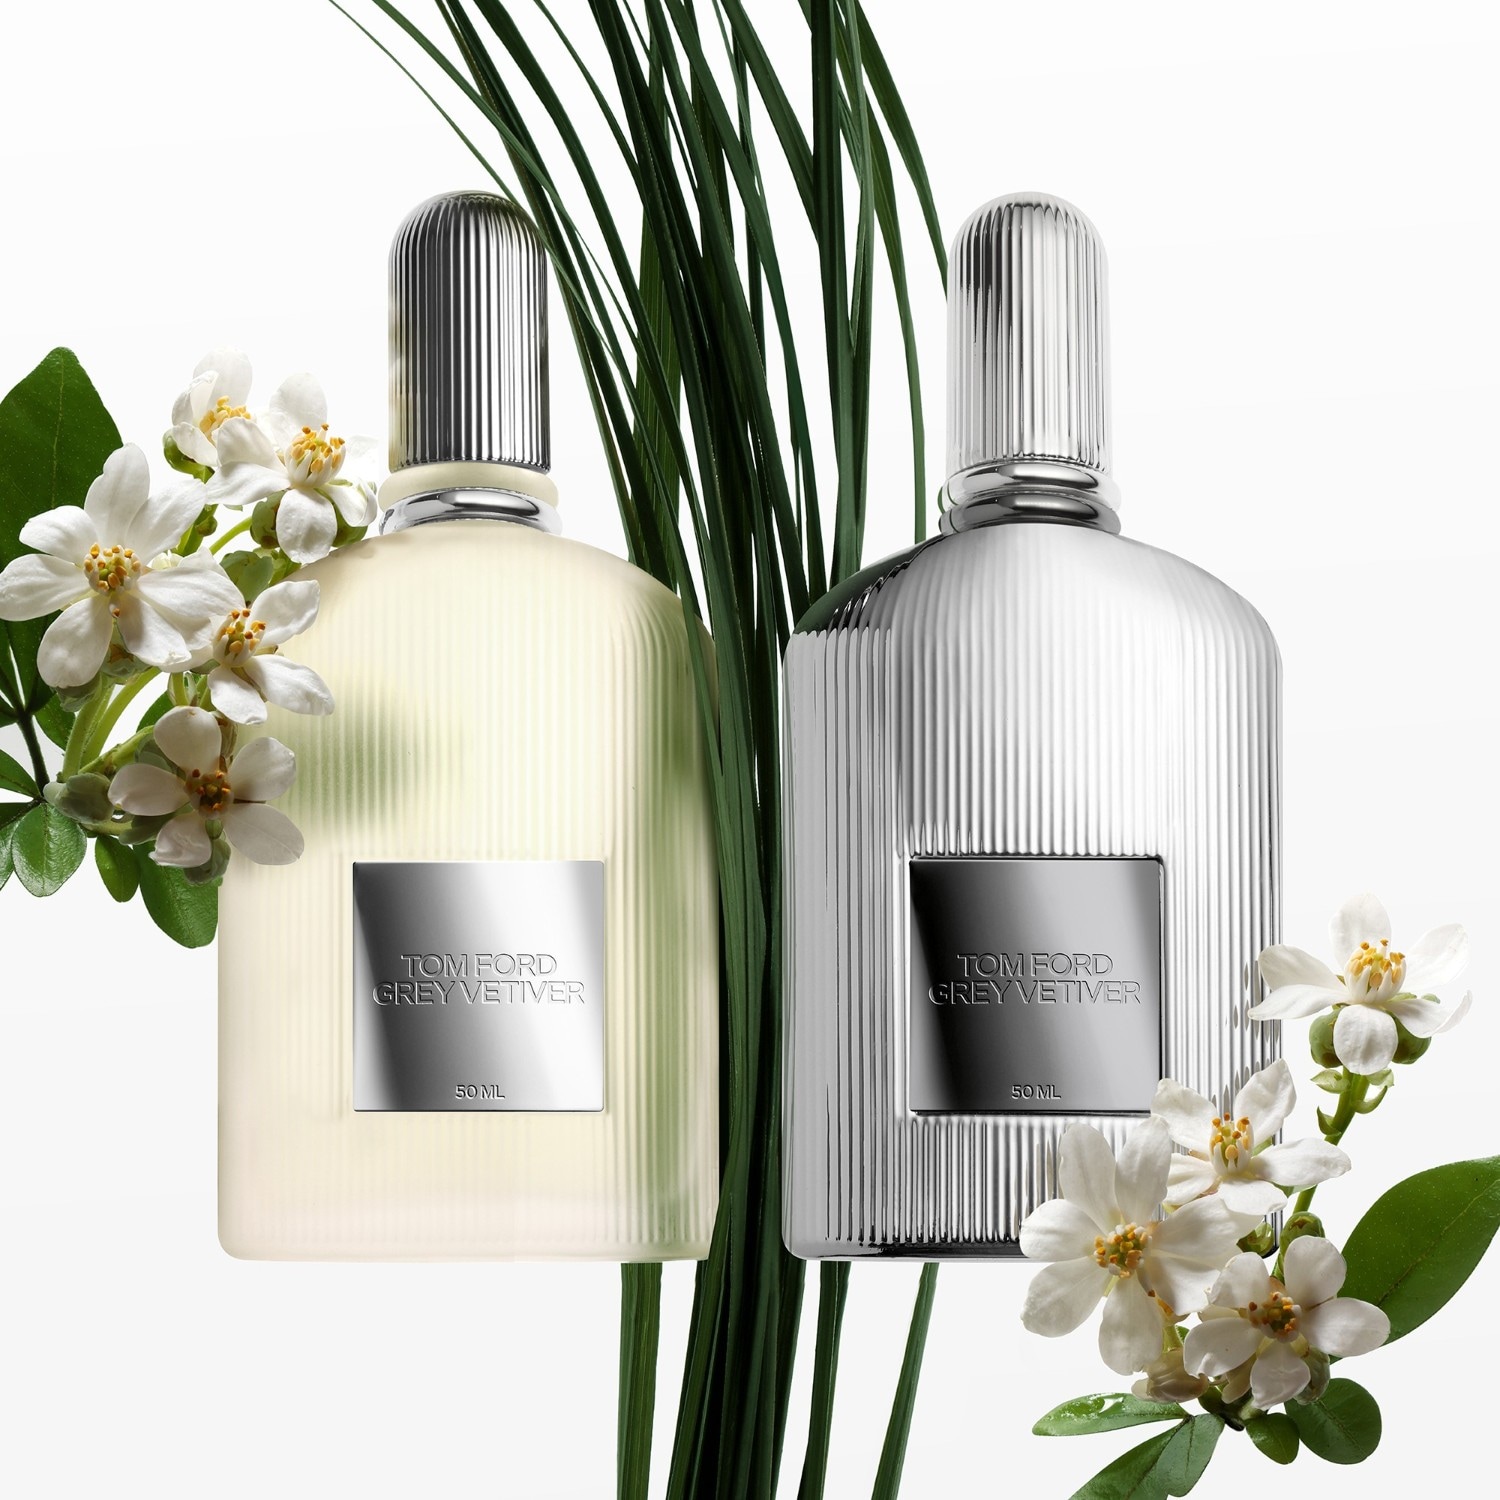 Tom Ford Grey Vetiver Parfum | DOUGLAS